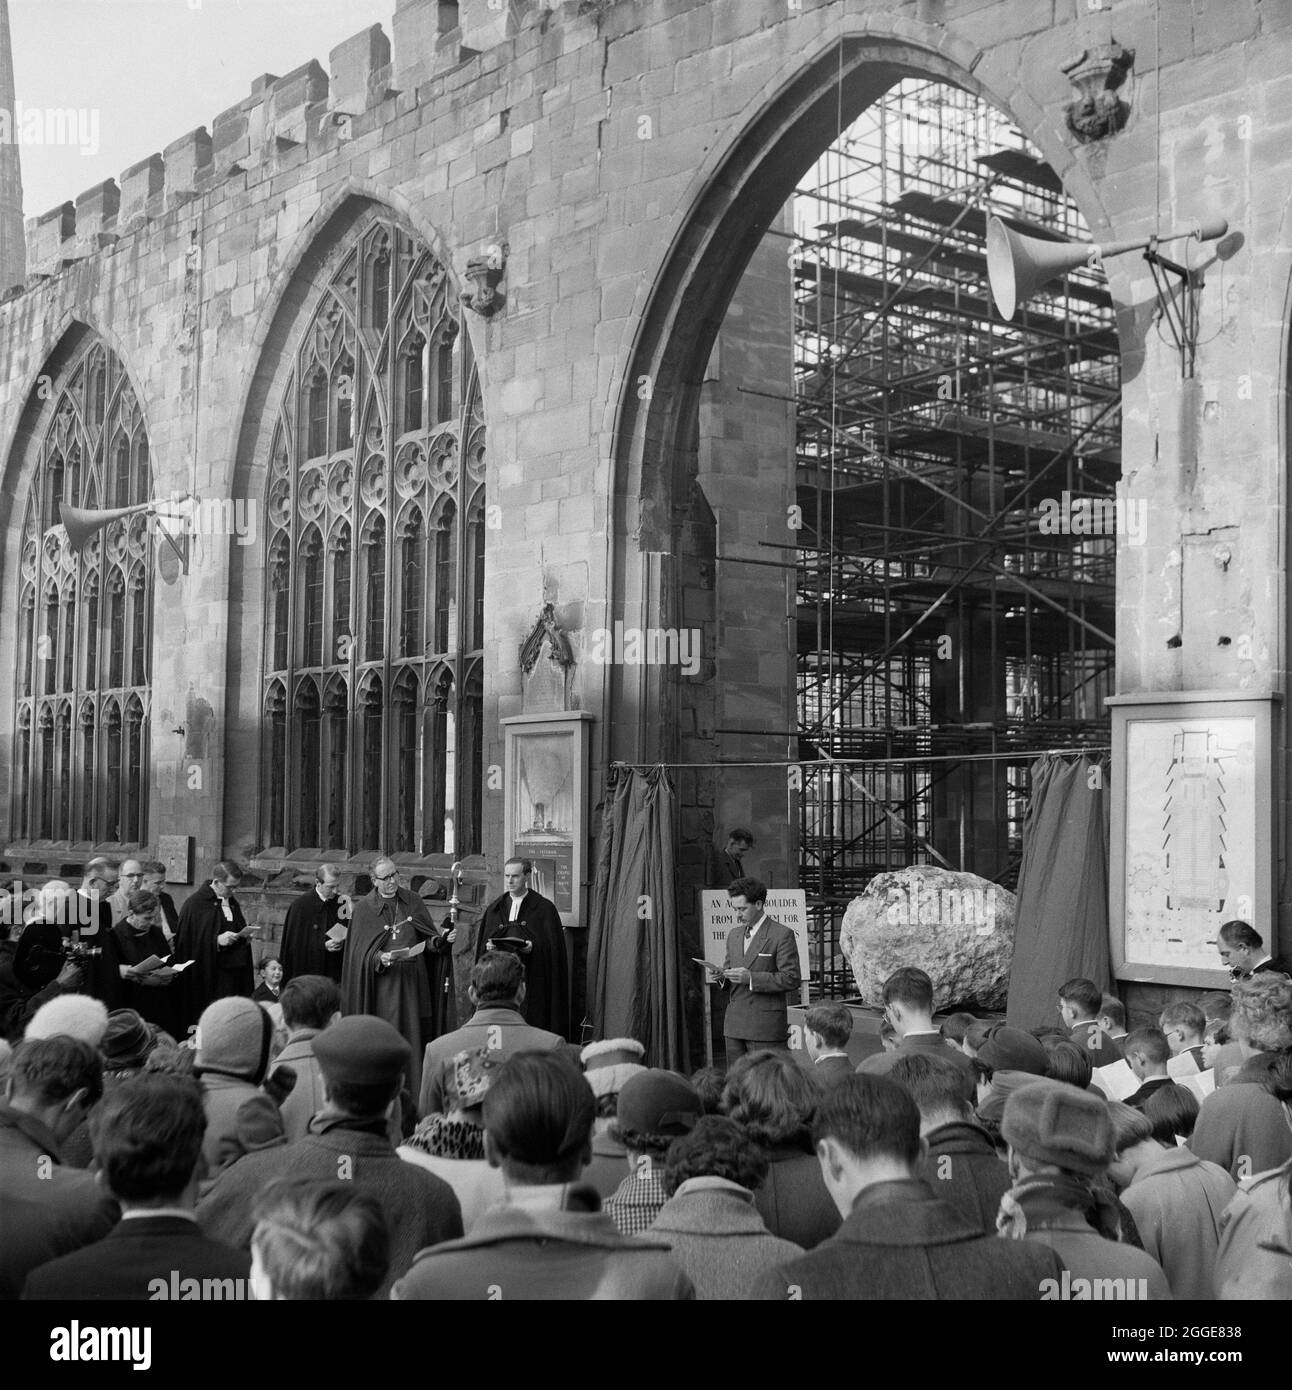 Eine Menge Leute versammelten sich vor der Kathedrale von Coventry zur Enthüllung des Felsens aus Bethlehem. Der Felsbrocken, der von einem Hügel in Bethlehem gebracht wurde, wurde zur Kathedrale von Coventry transportiert, um dort als neues Taufbecken verwendet zu werden. Mit einem Gewicht von drei Tonnen wurde er in der SS Norman Prince nach Manchester Docks und dann nach Coventry transportiert. Die Enthüllungszeremonie fand am 22. Dezember 1960 statt und der Felsbrocken wurde vom 7-jährigen Henry Sumner, Sohn des Zimmermanns in der Coventry Cathedral, enthüllt. Der Felsbrocken wurde später an seine aktuelle Position vor dem Tauffenster gebracht. Stockfoto